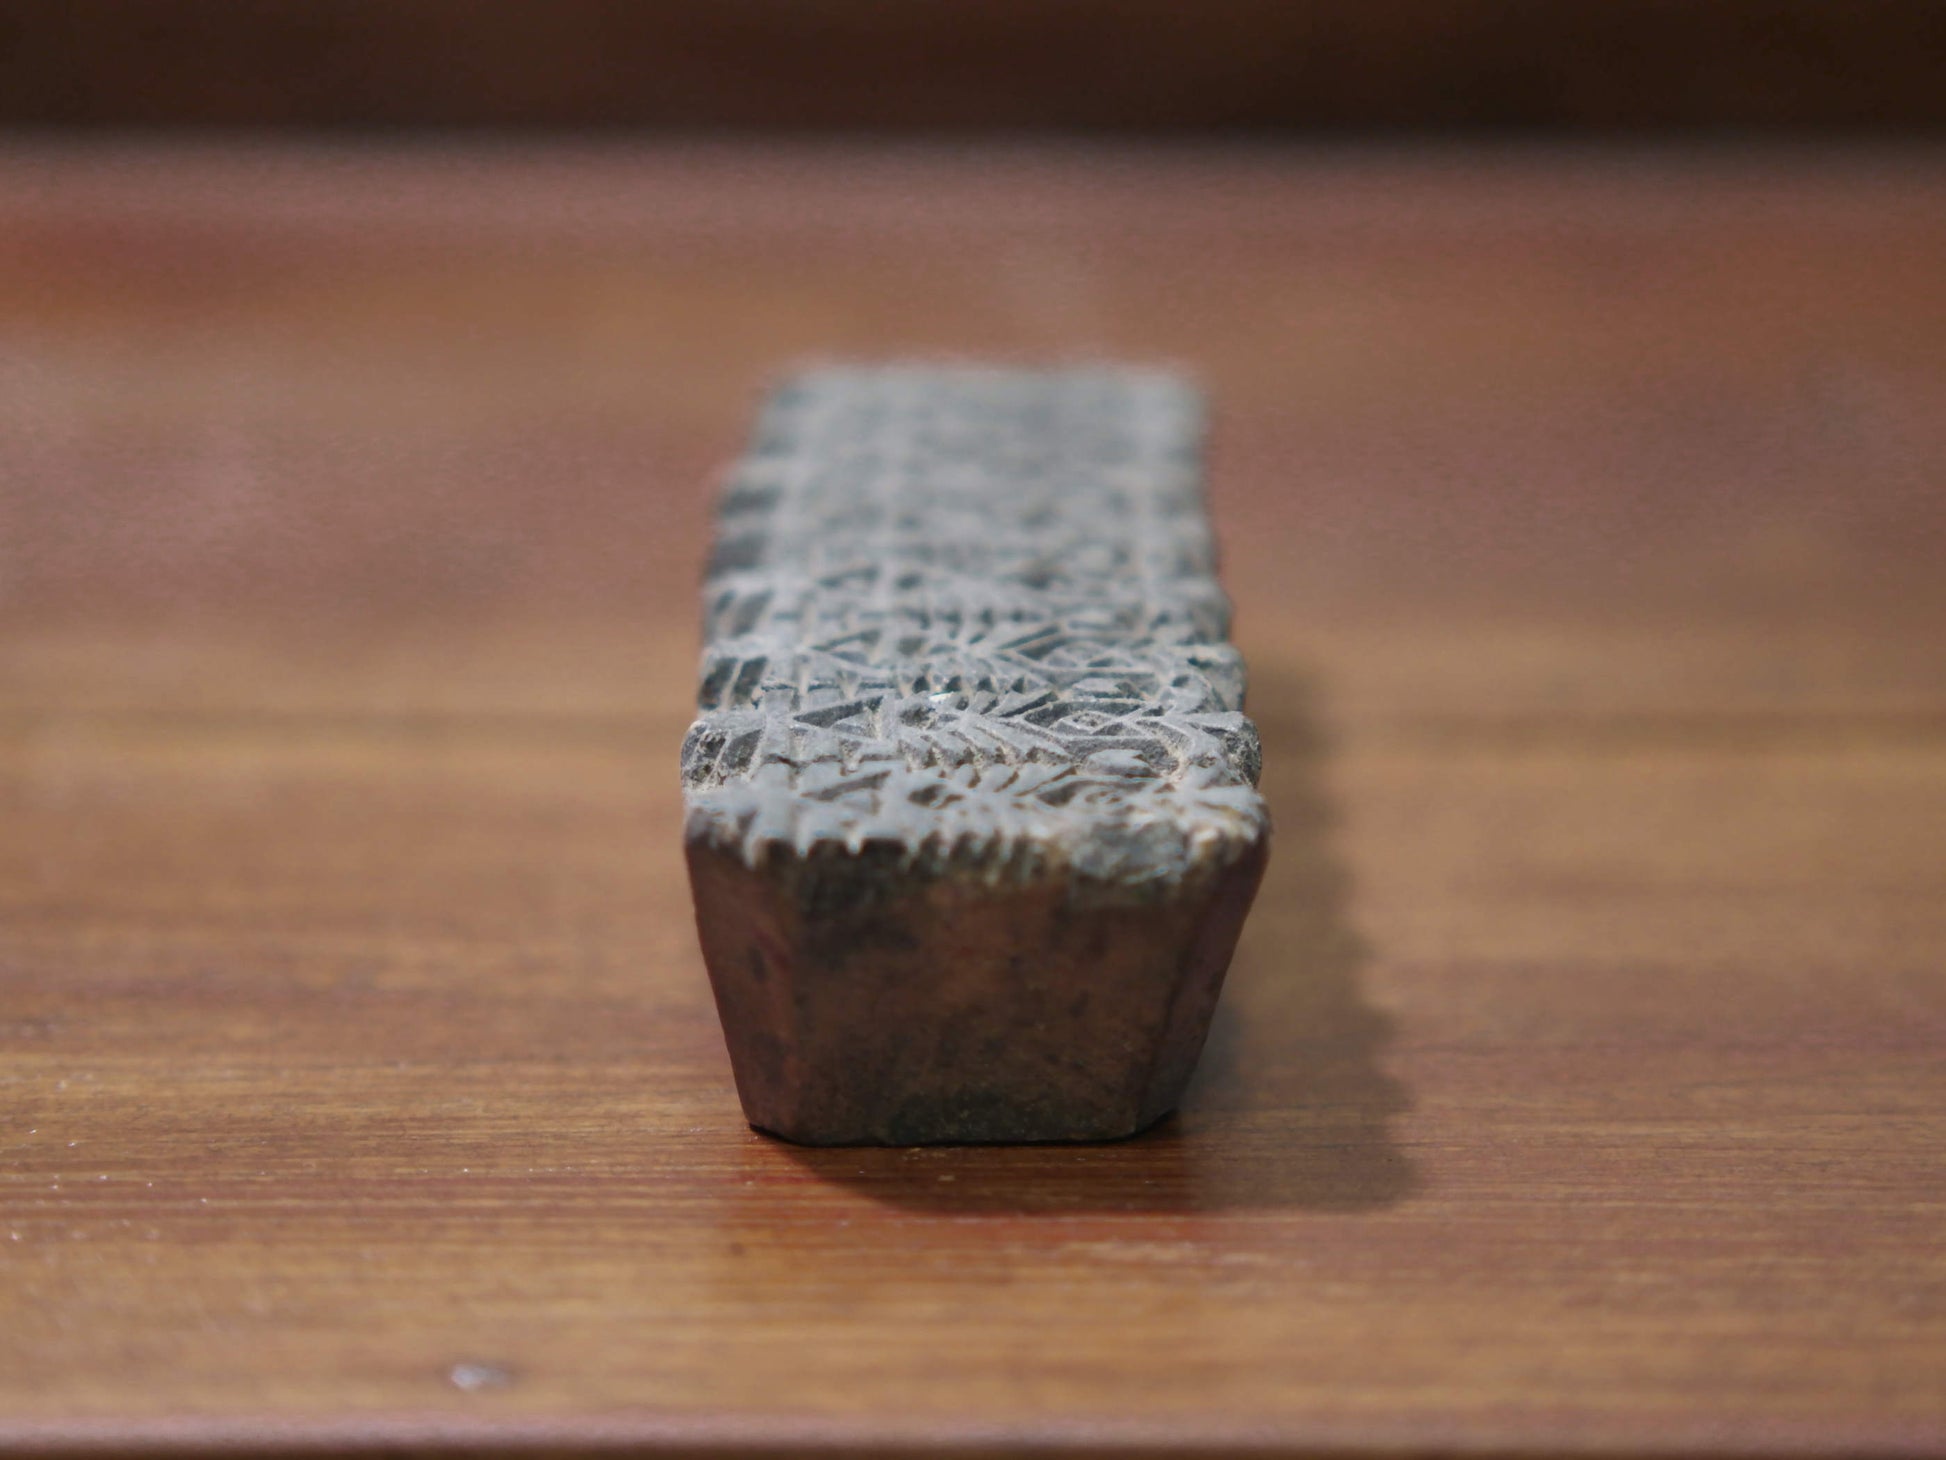 vecchio timbro artigianale in legno per tessuti usato in India per la tradizionale lavorazione print block. ricavato da un unico pezzo di legno intagliato.  dimensioni 14x5 prof.3cm.